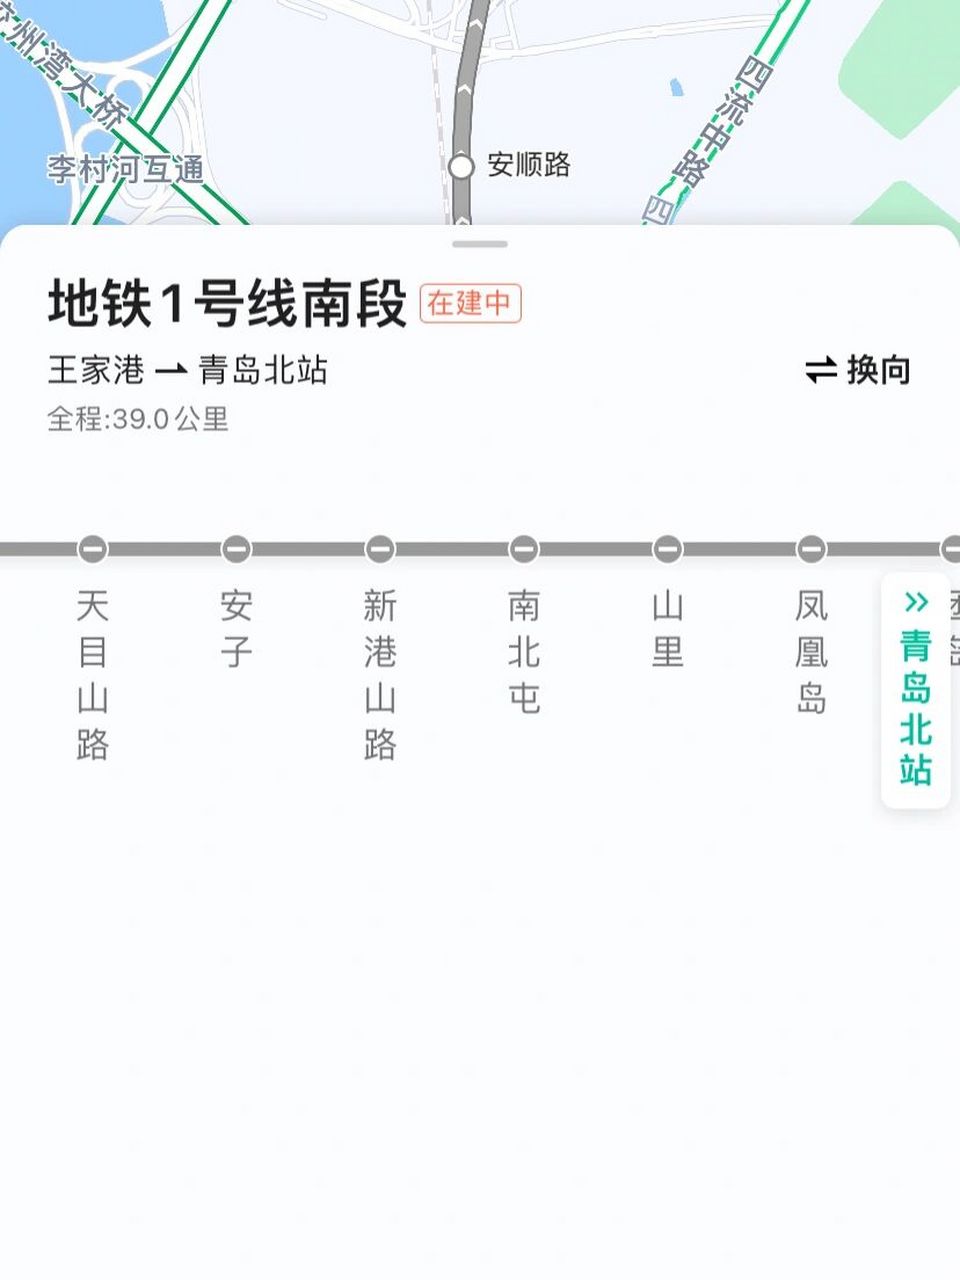 青岛地铁1号线 马上要开通了,全程站点都有哪些地方可以玩啊?